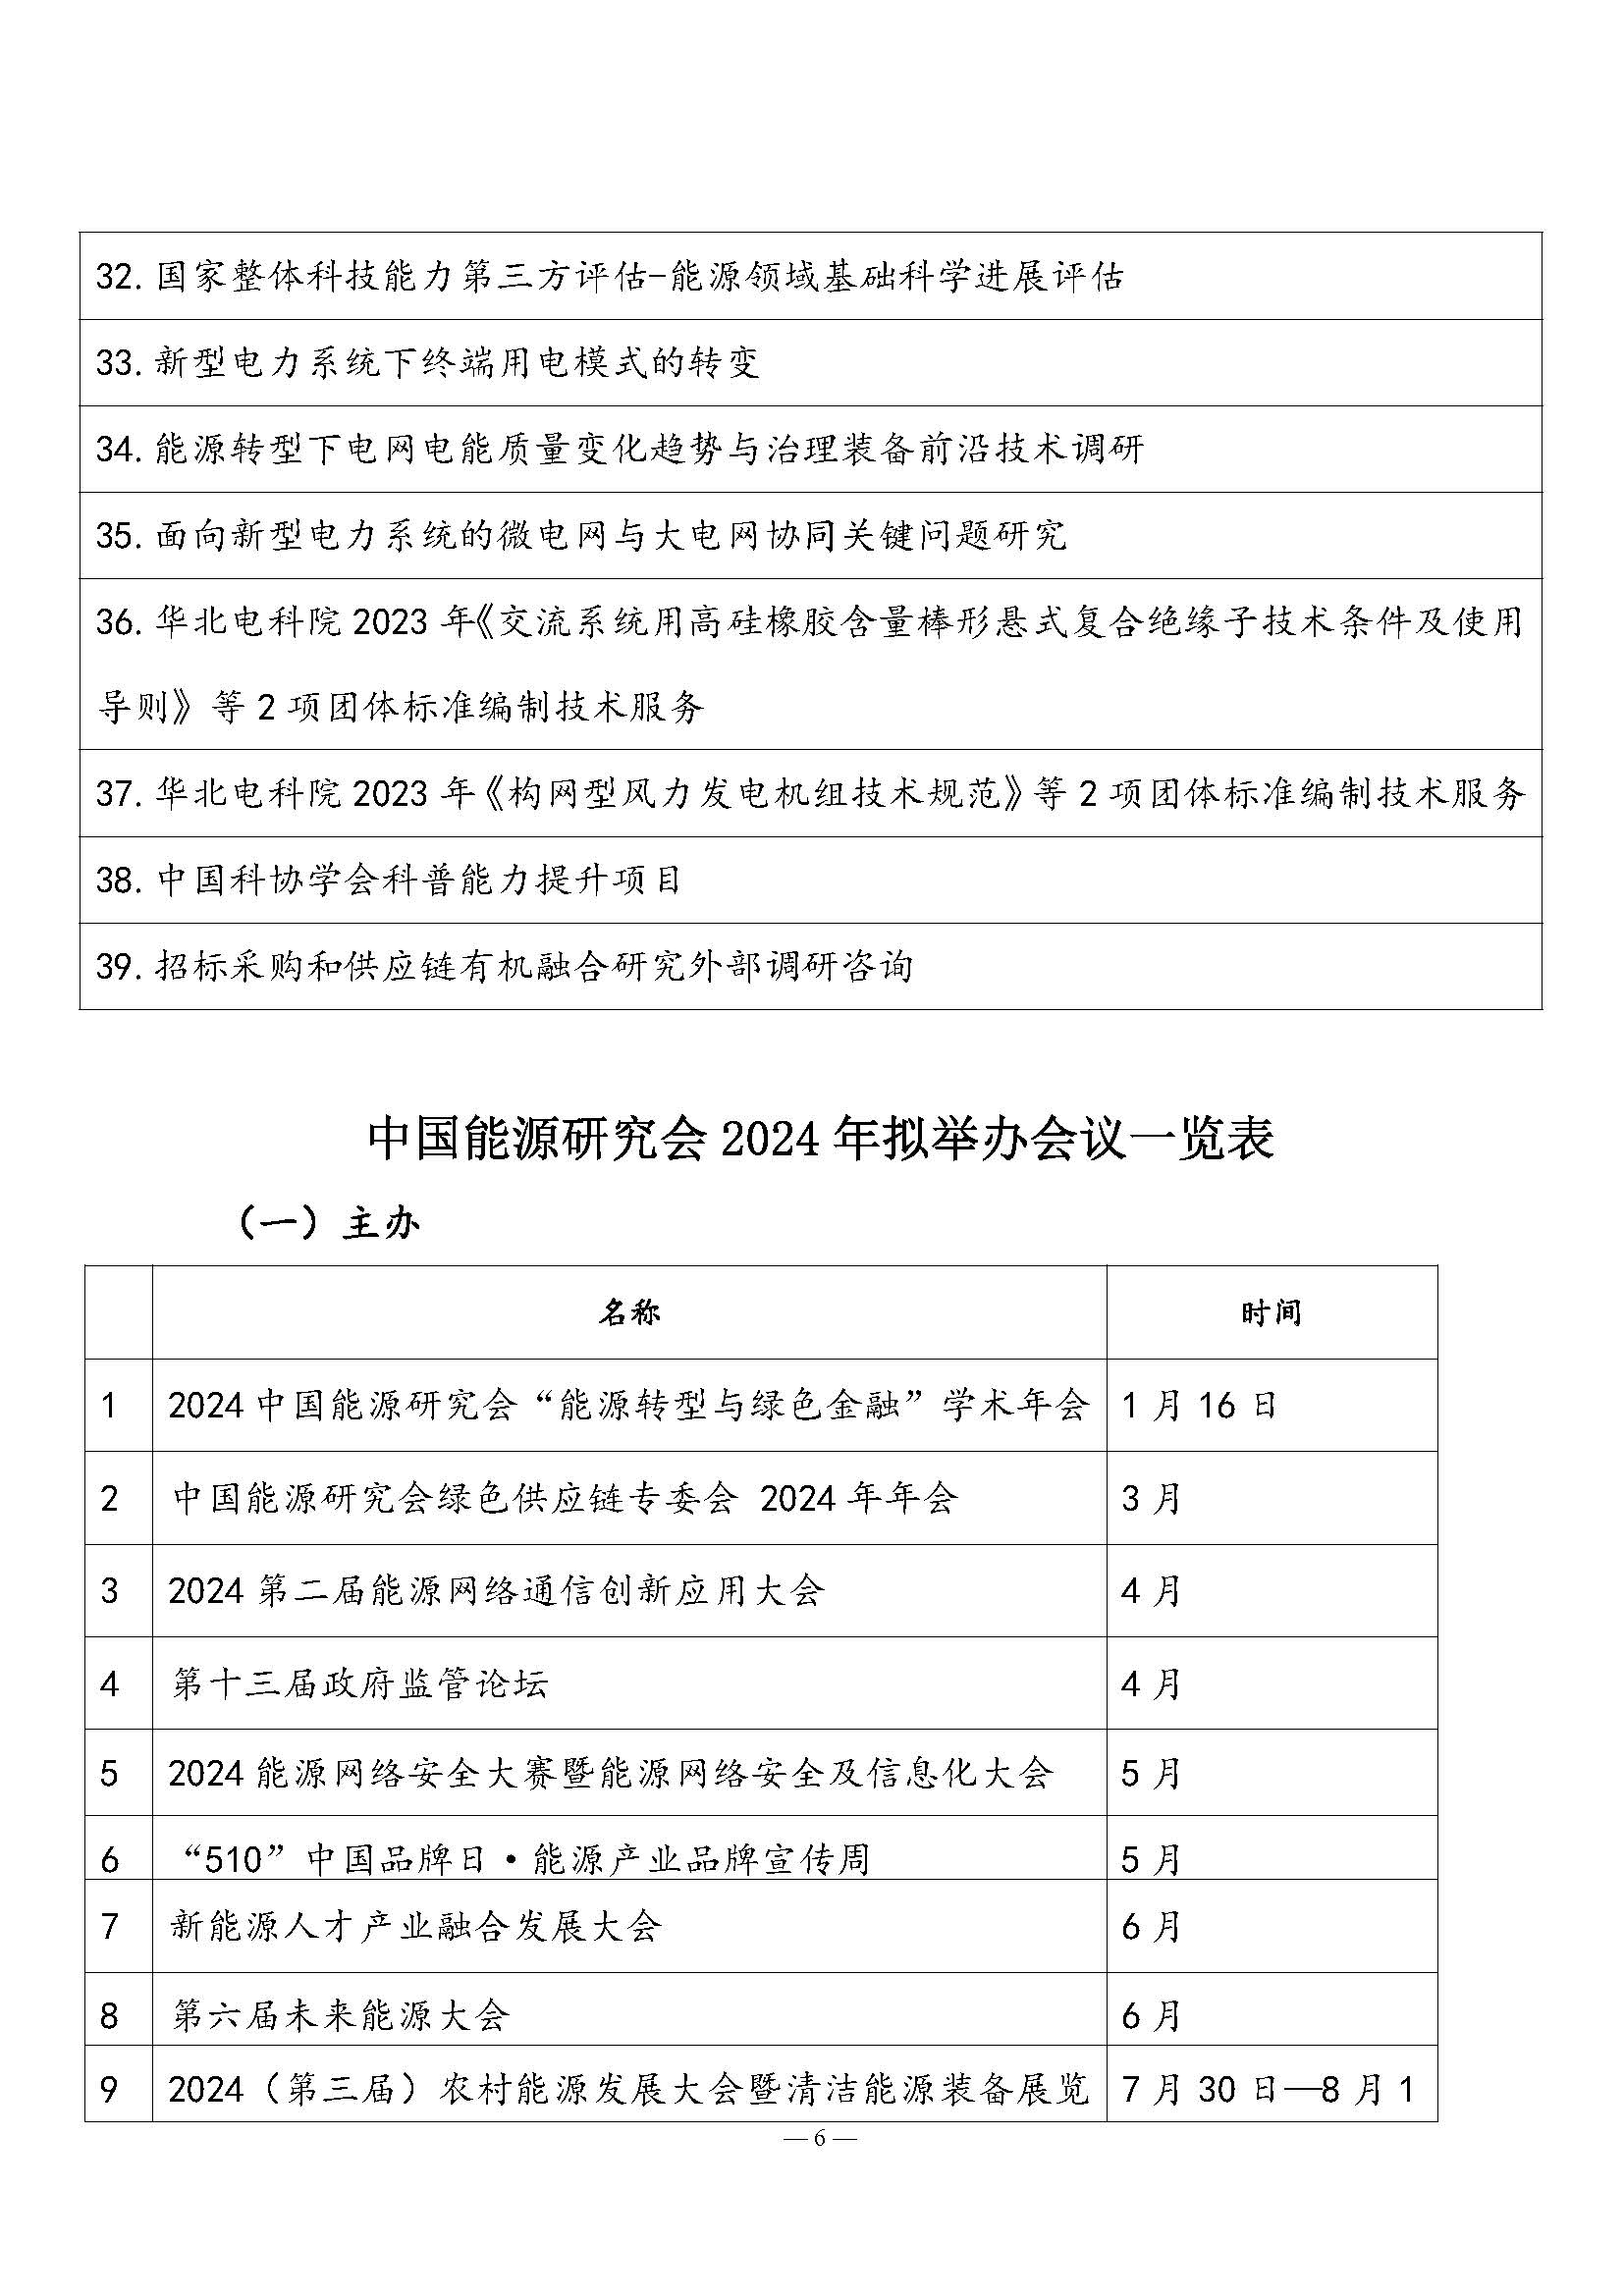 中国能源研究会2023年学术活动和项目汇总(3)_页面_6.jpg